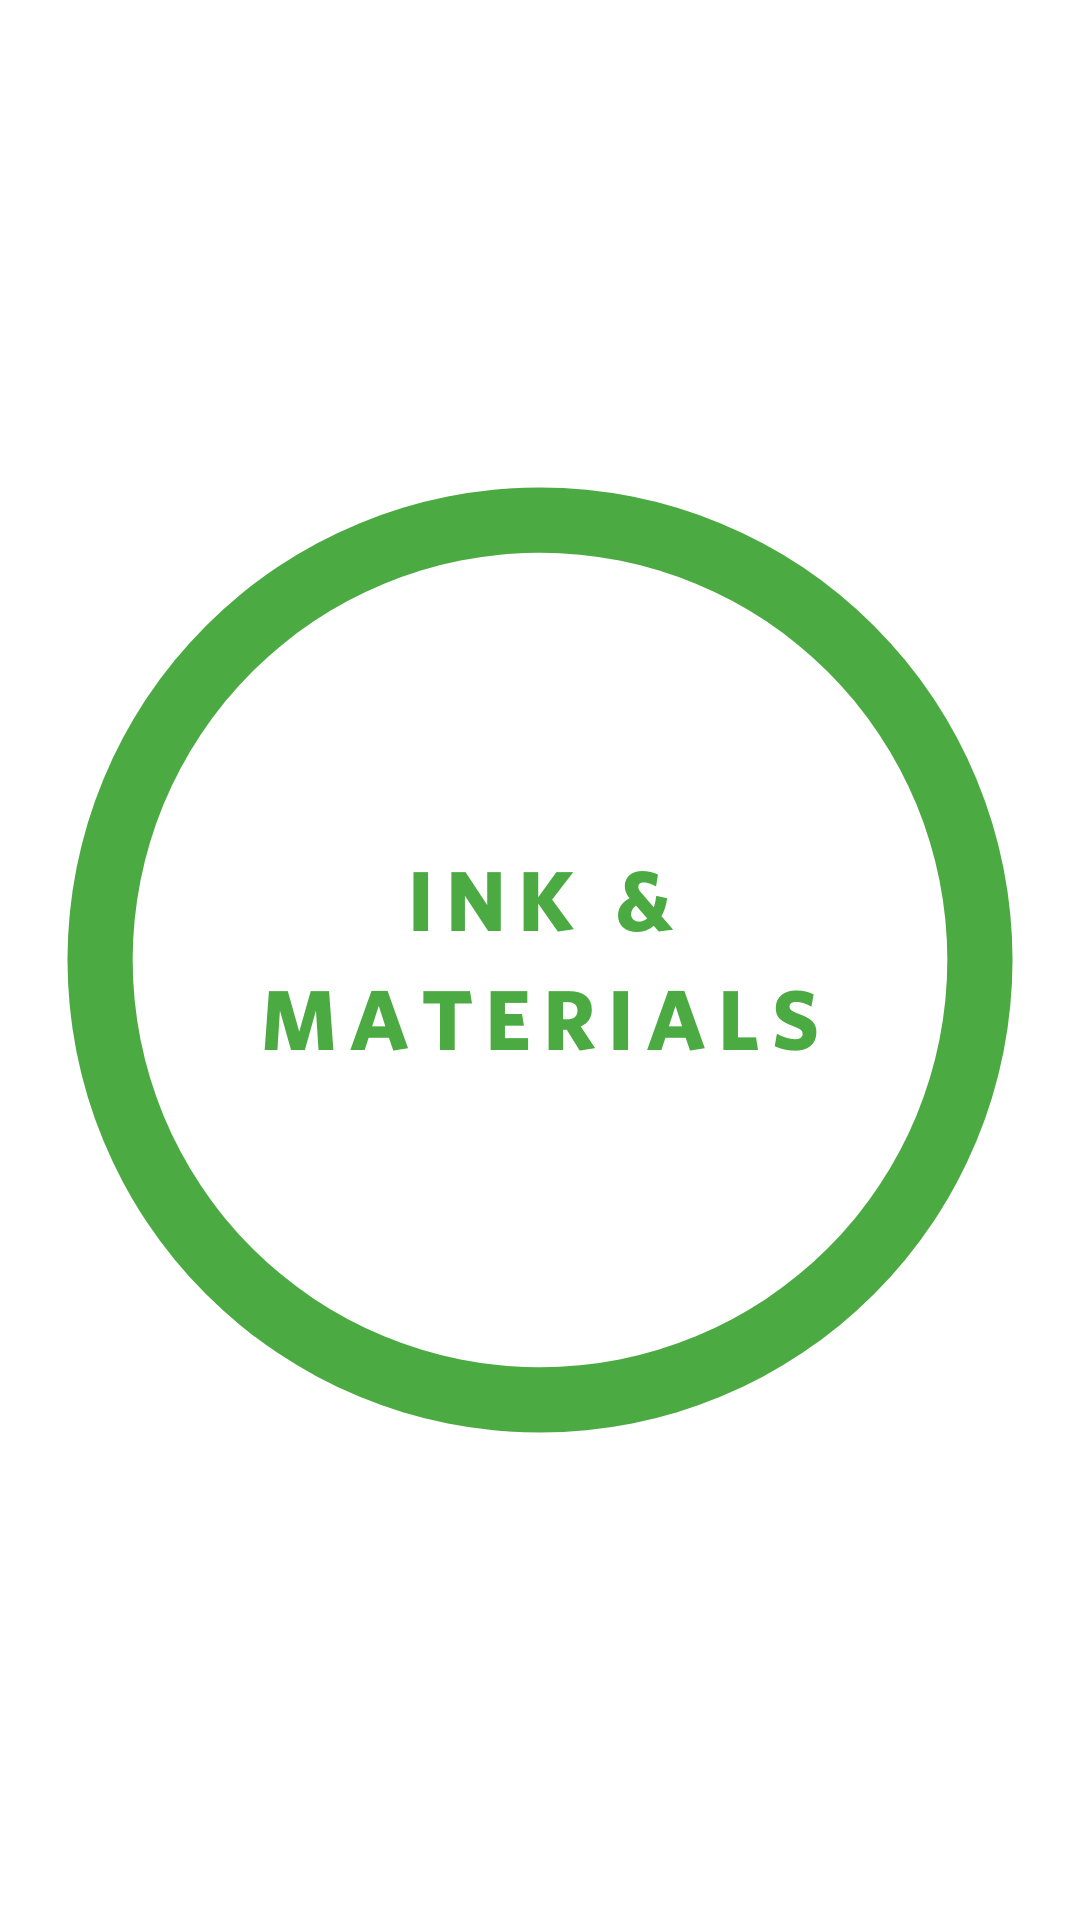 Ink & Materials